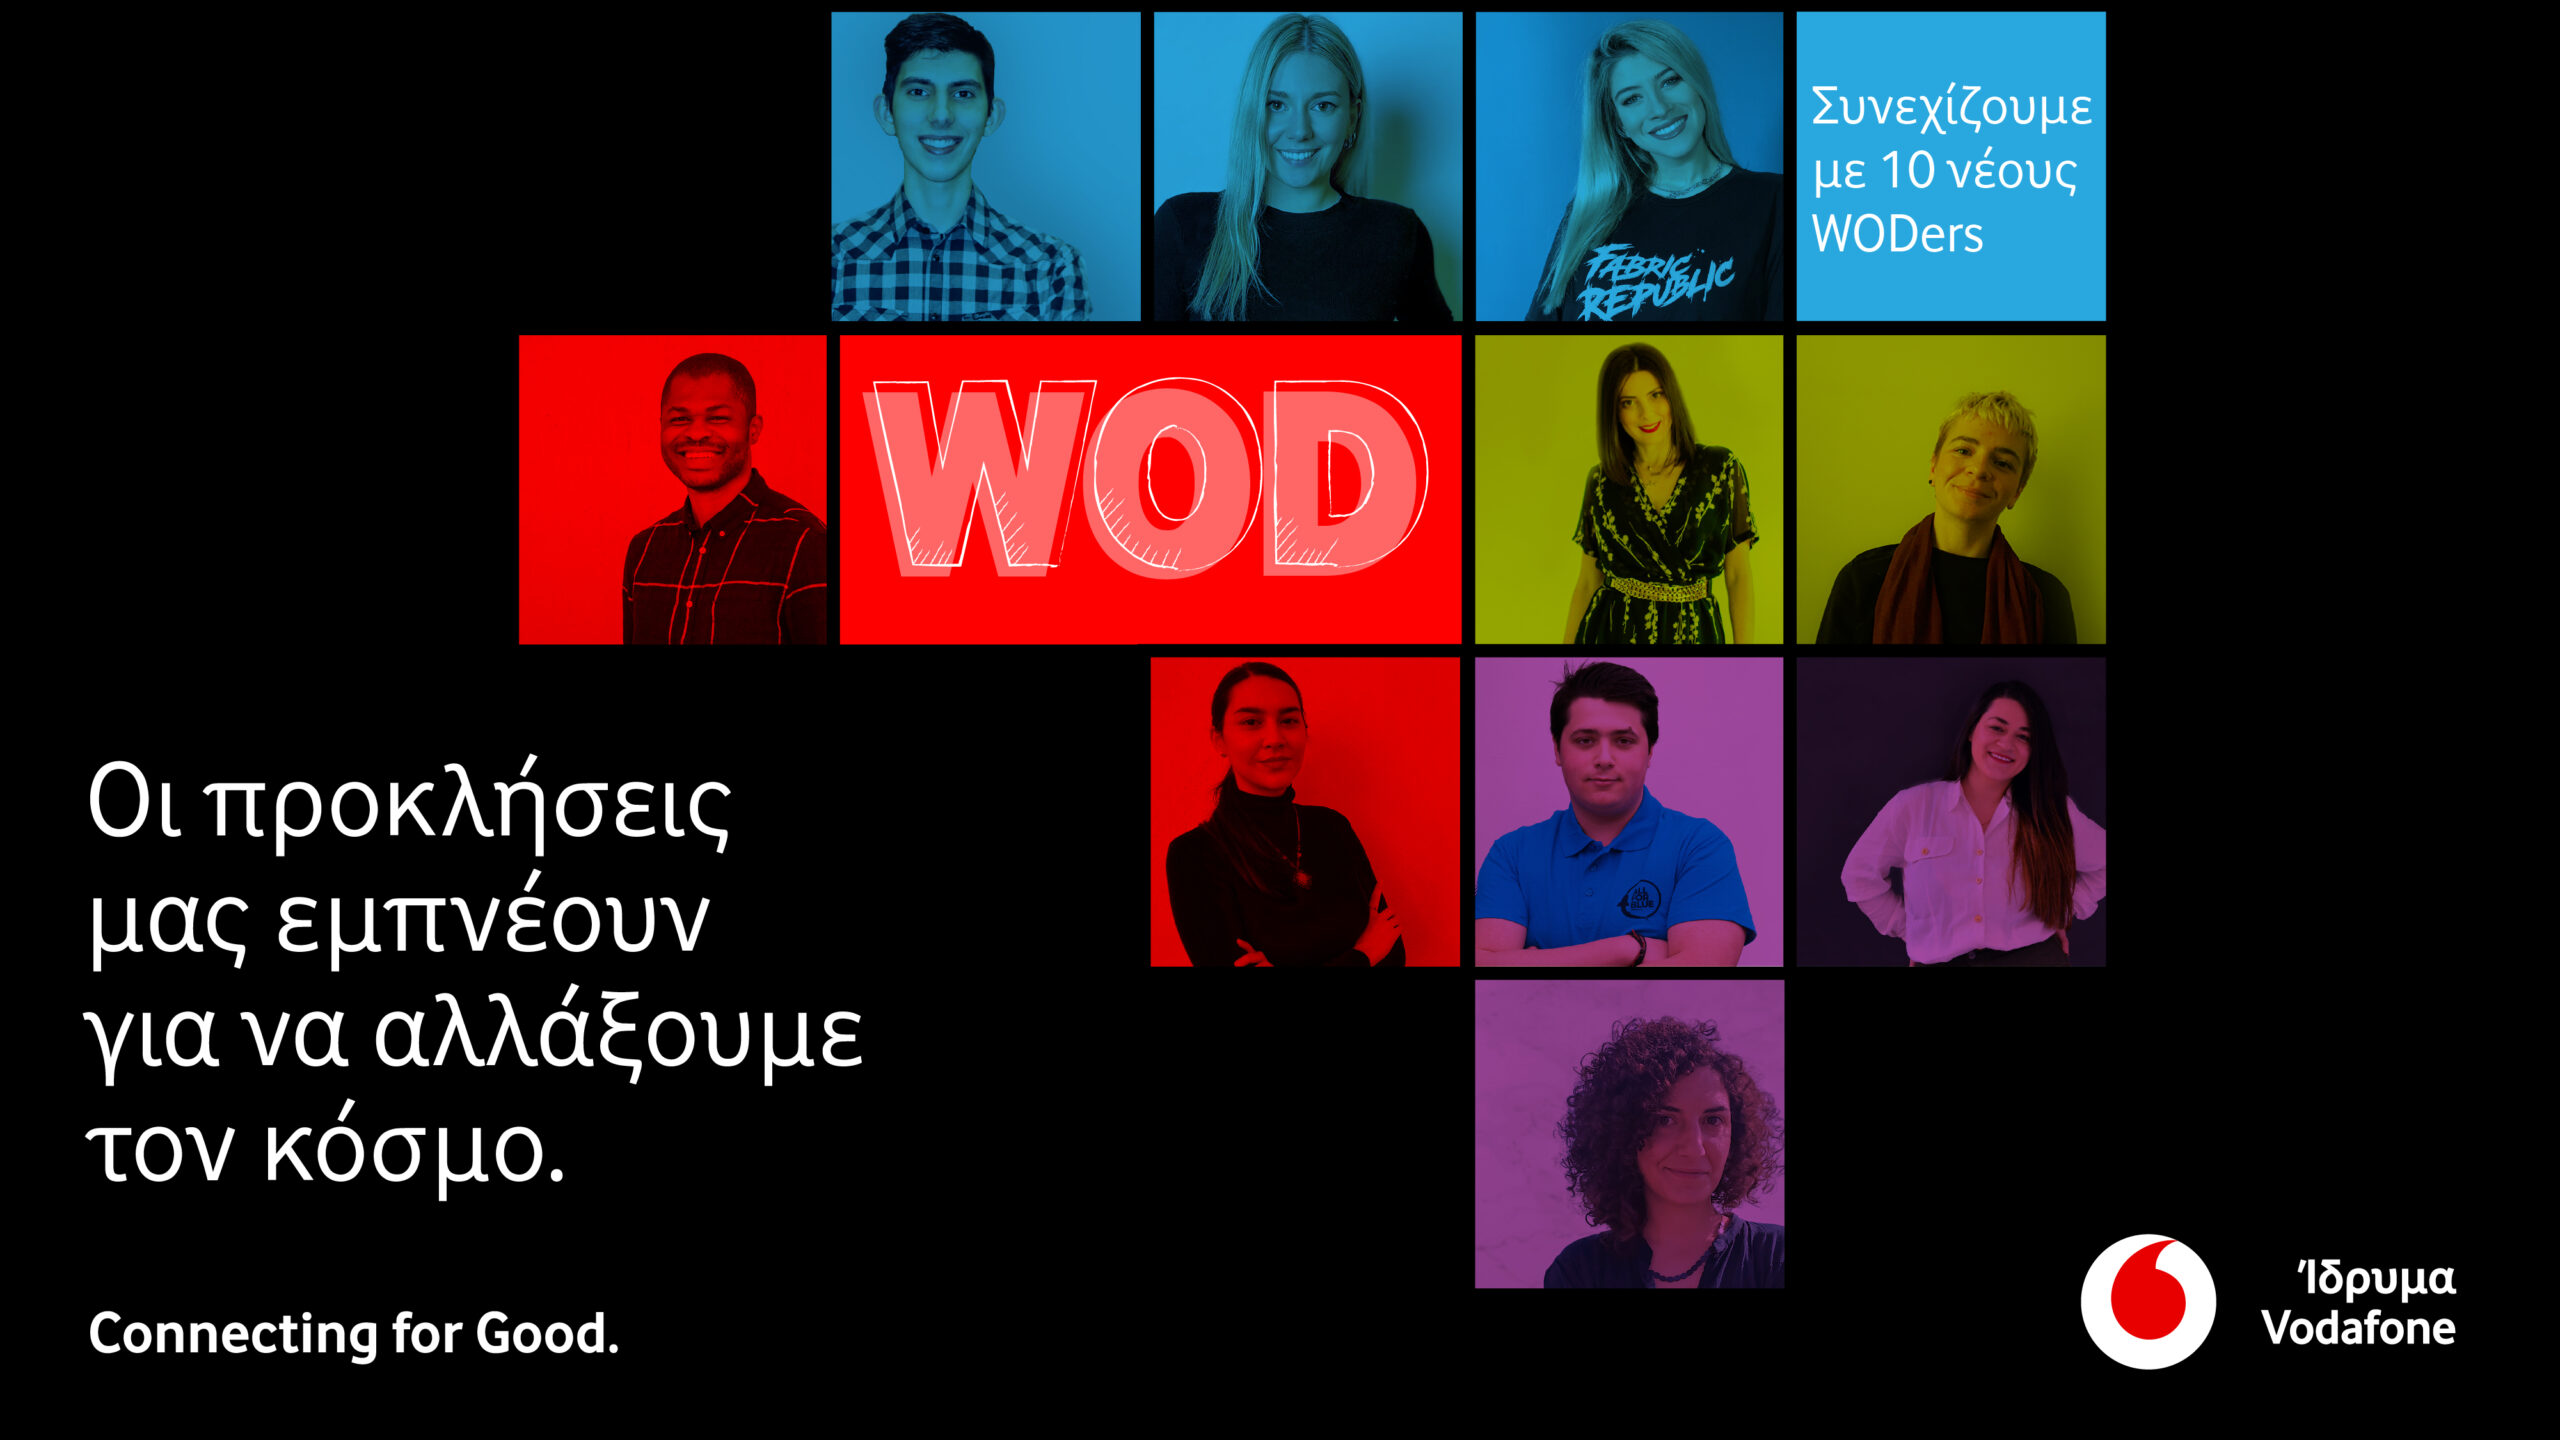 Το Ίδρυμα Vodafone ανακοινώνει τους φετινούς νικητές του προγράμματος World of Difference